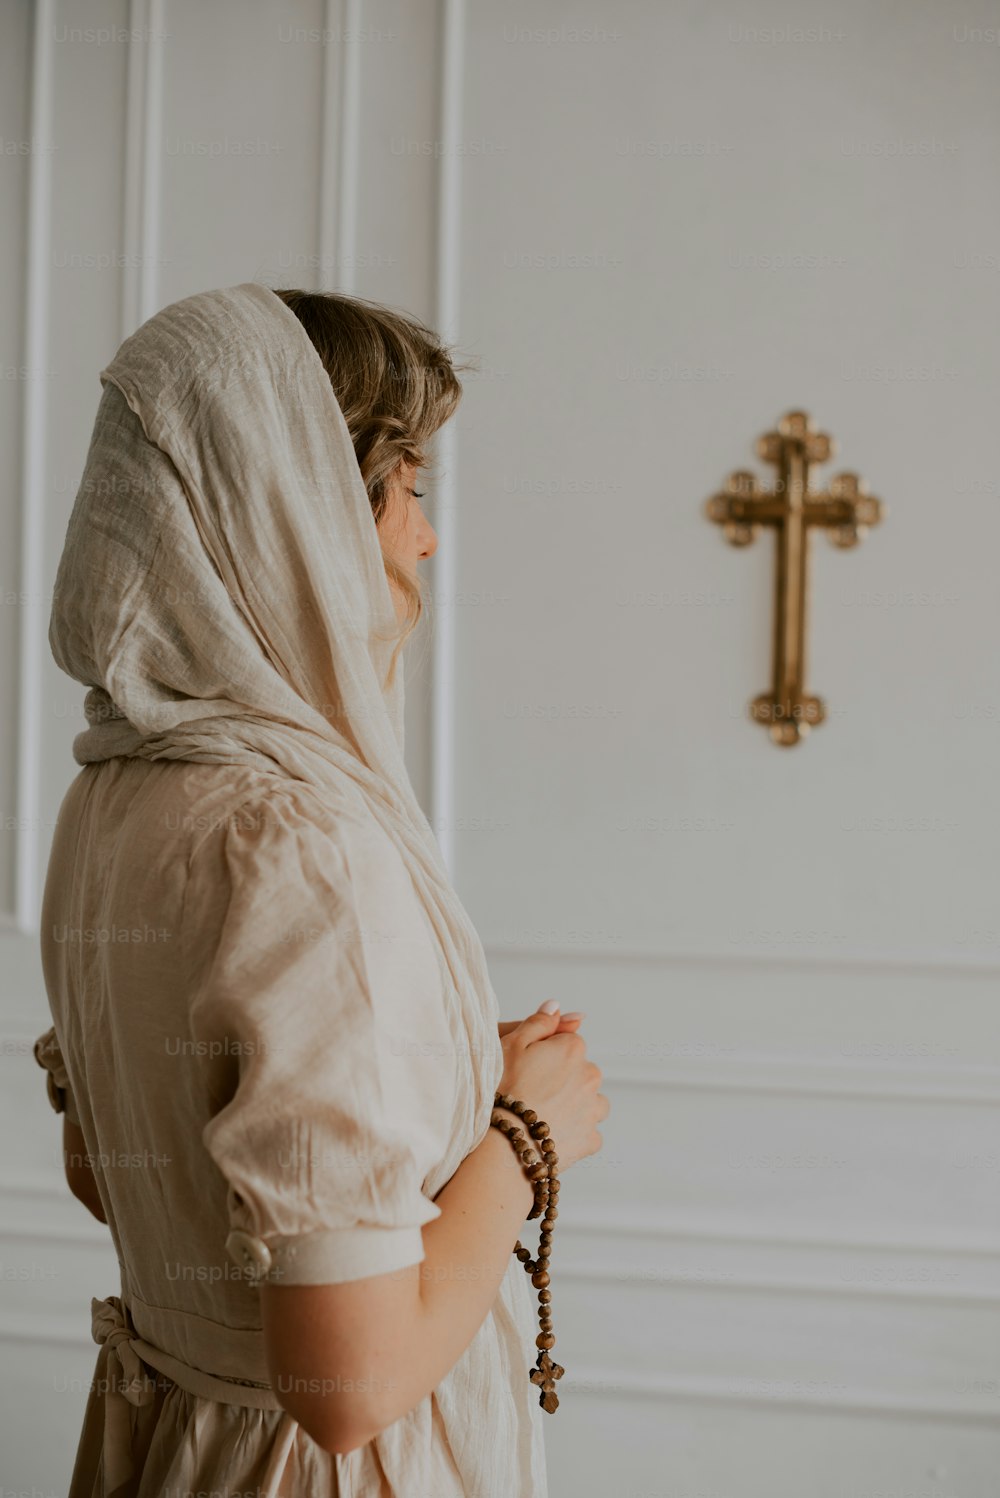 흰 드레스를 입은 여자가 십자가 앞에 서 있다